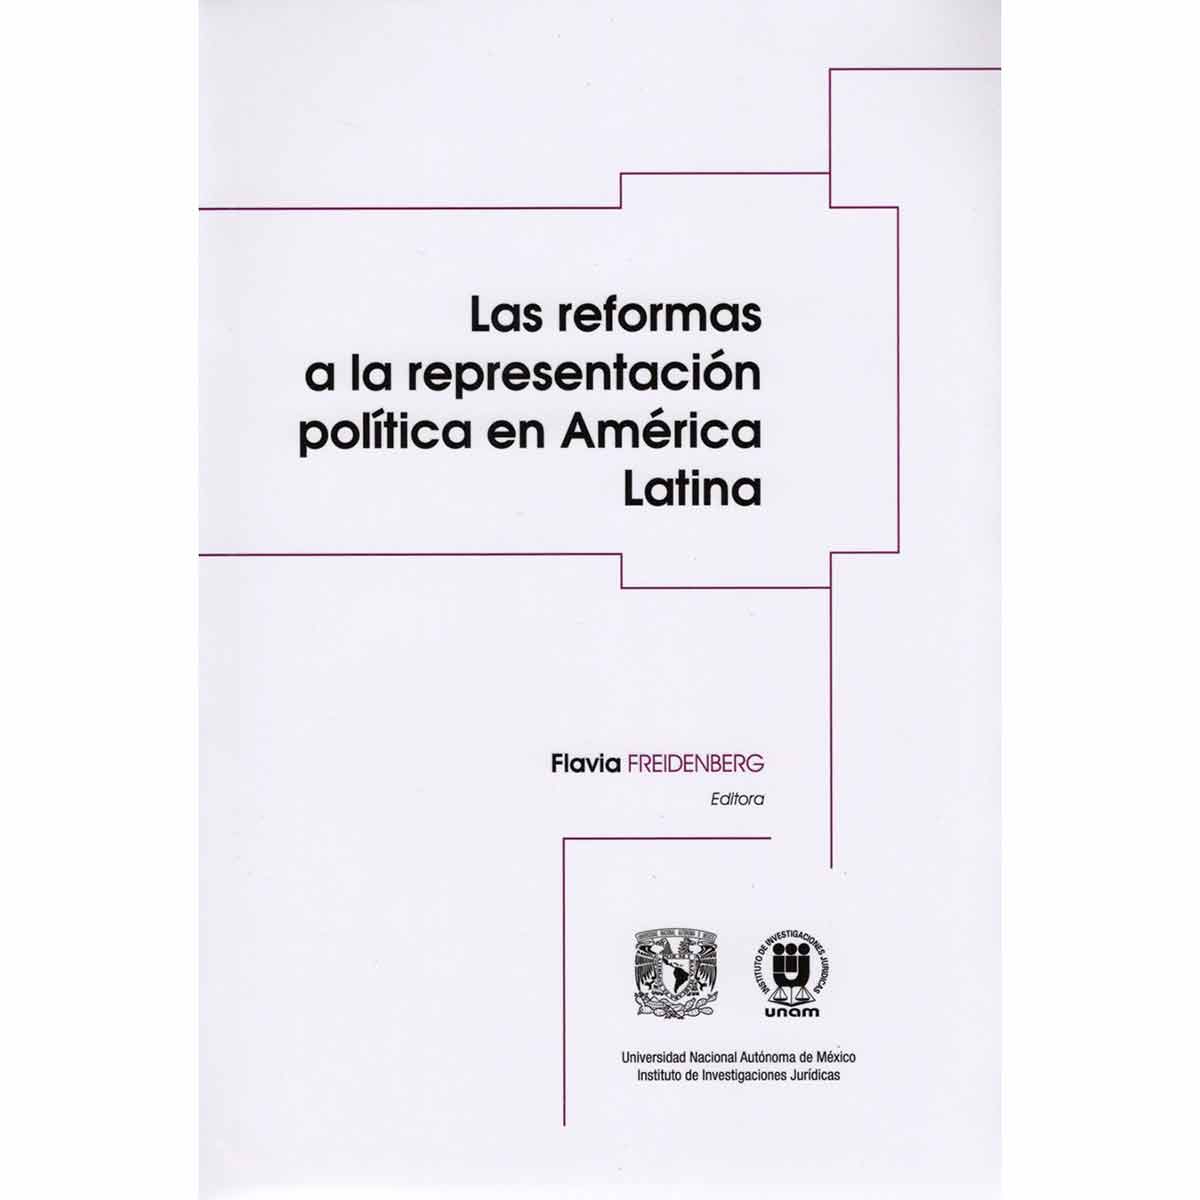 LAS REFORMAS A LA REPRESENTACIÓN POLÍTICA EN AMÉRICA LATINA